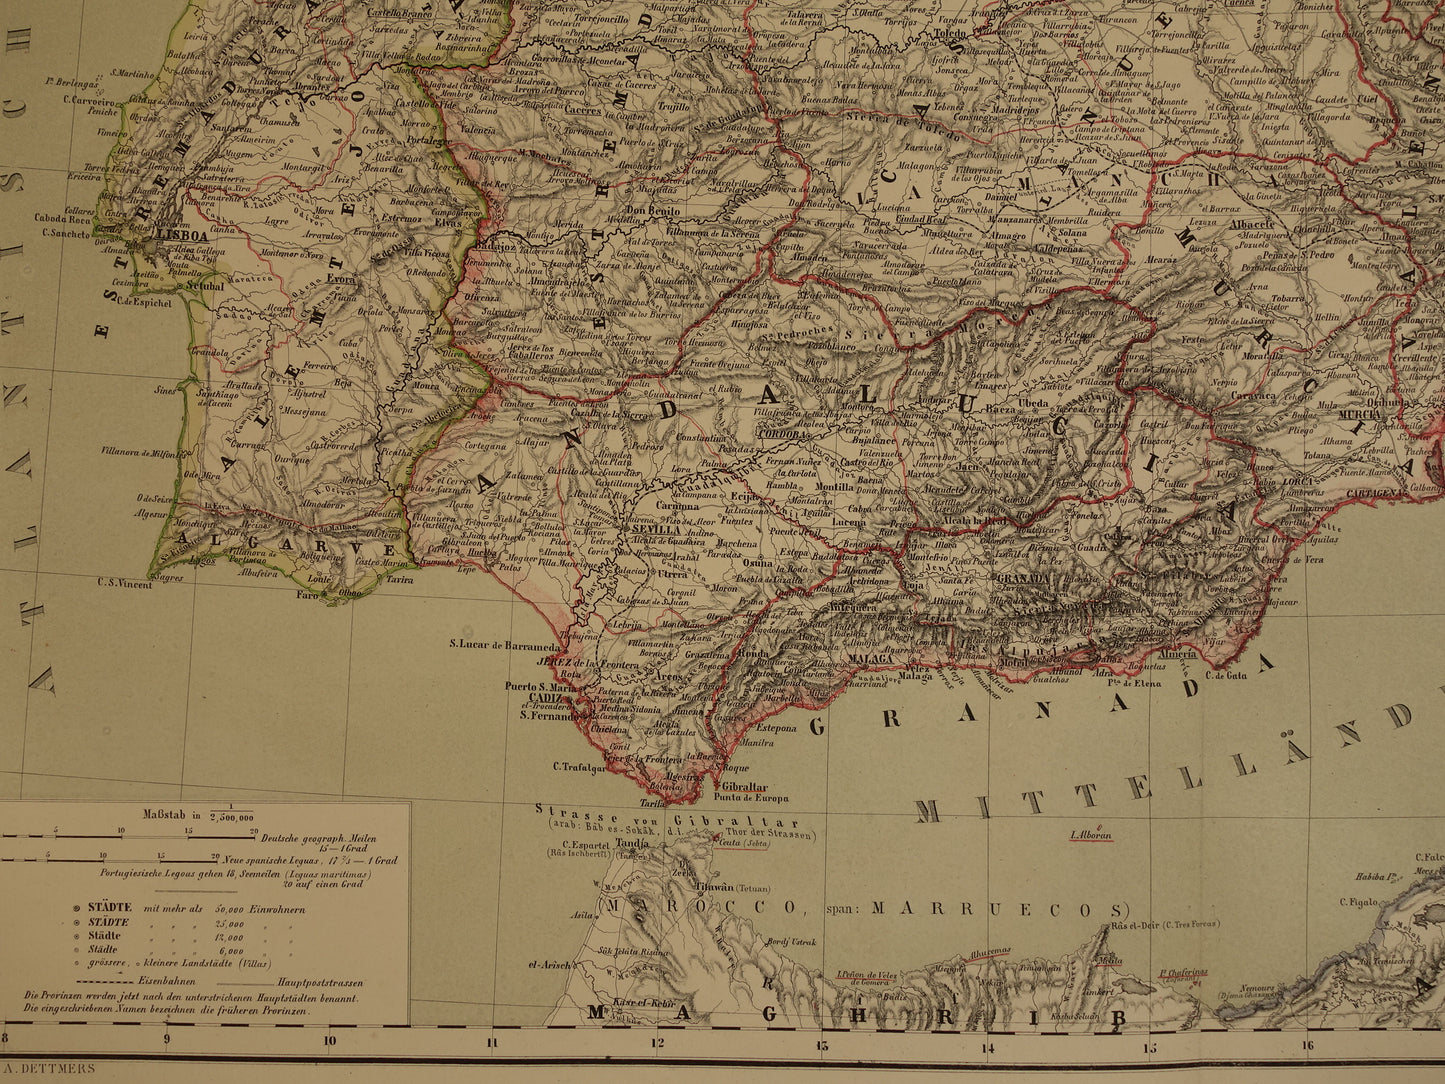 Grote oude kaart van Spanje en Portugal in 1857 originele antieke landkaart met jaartal